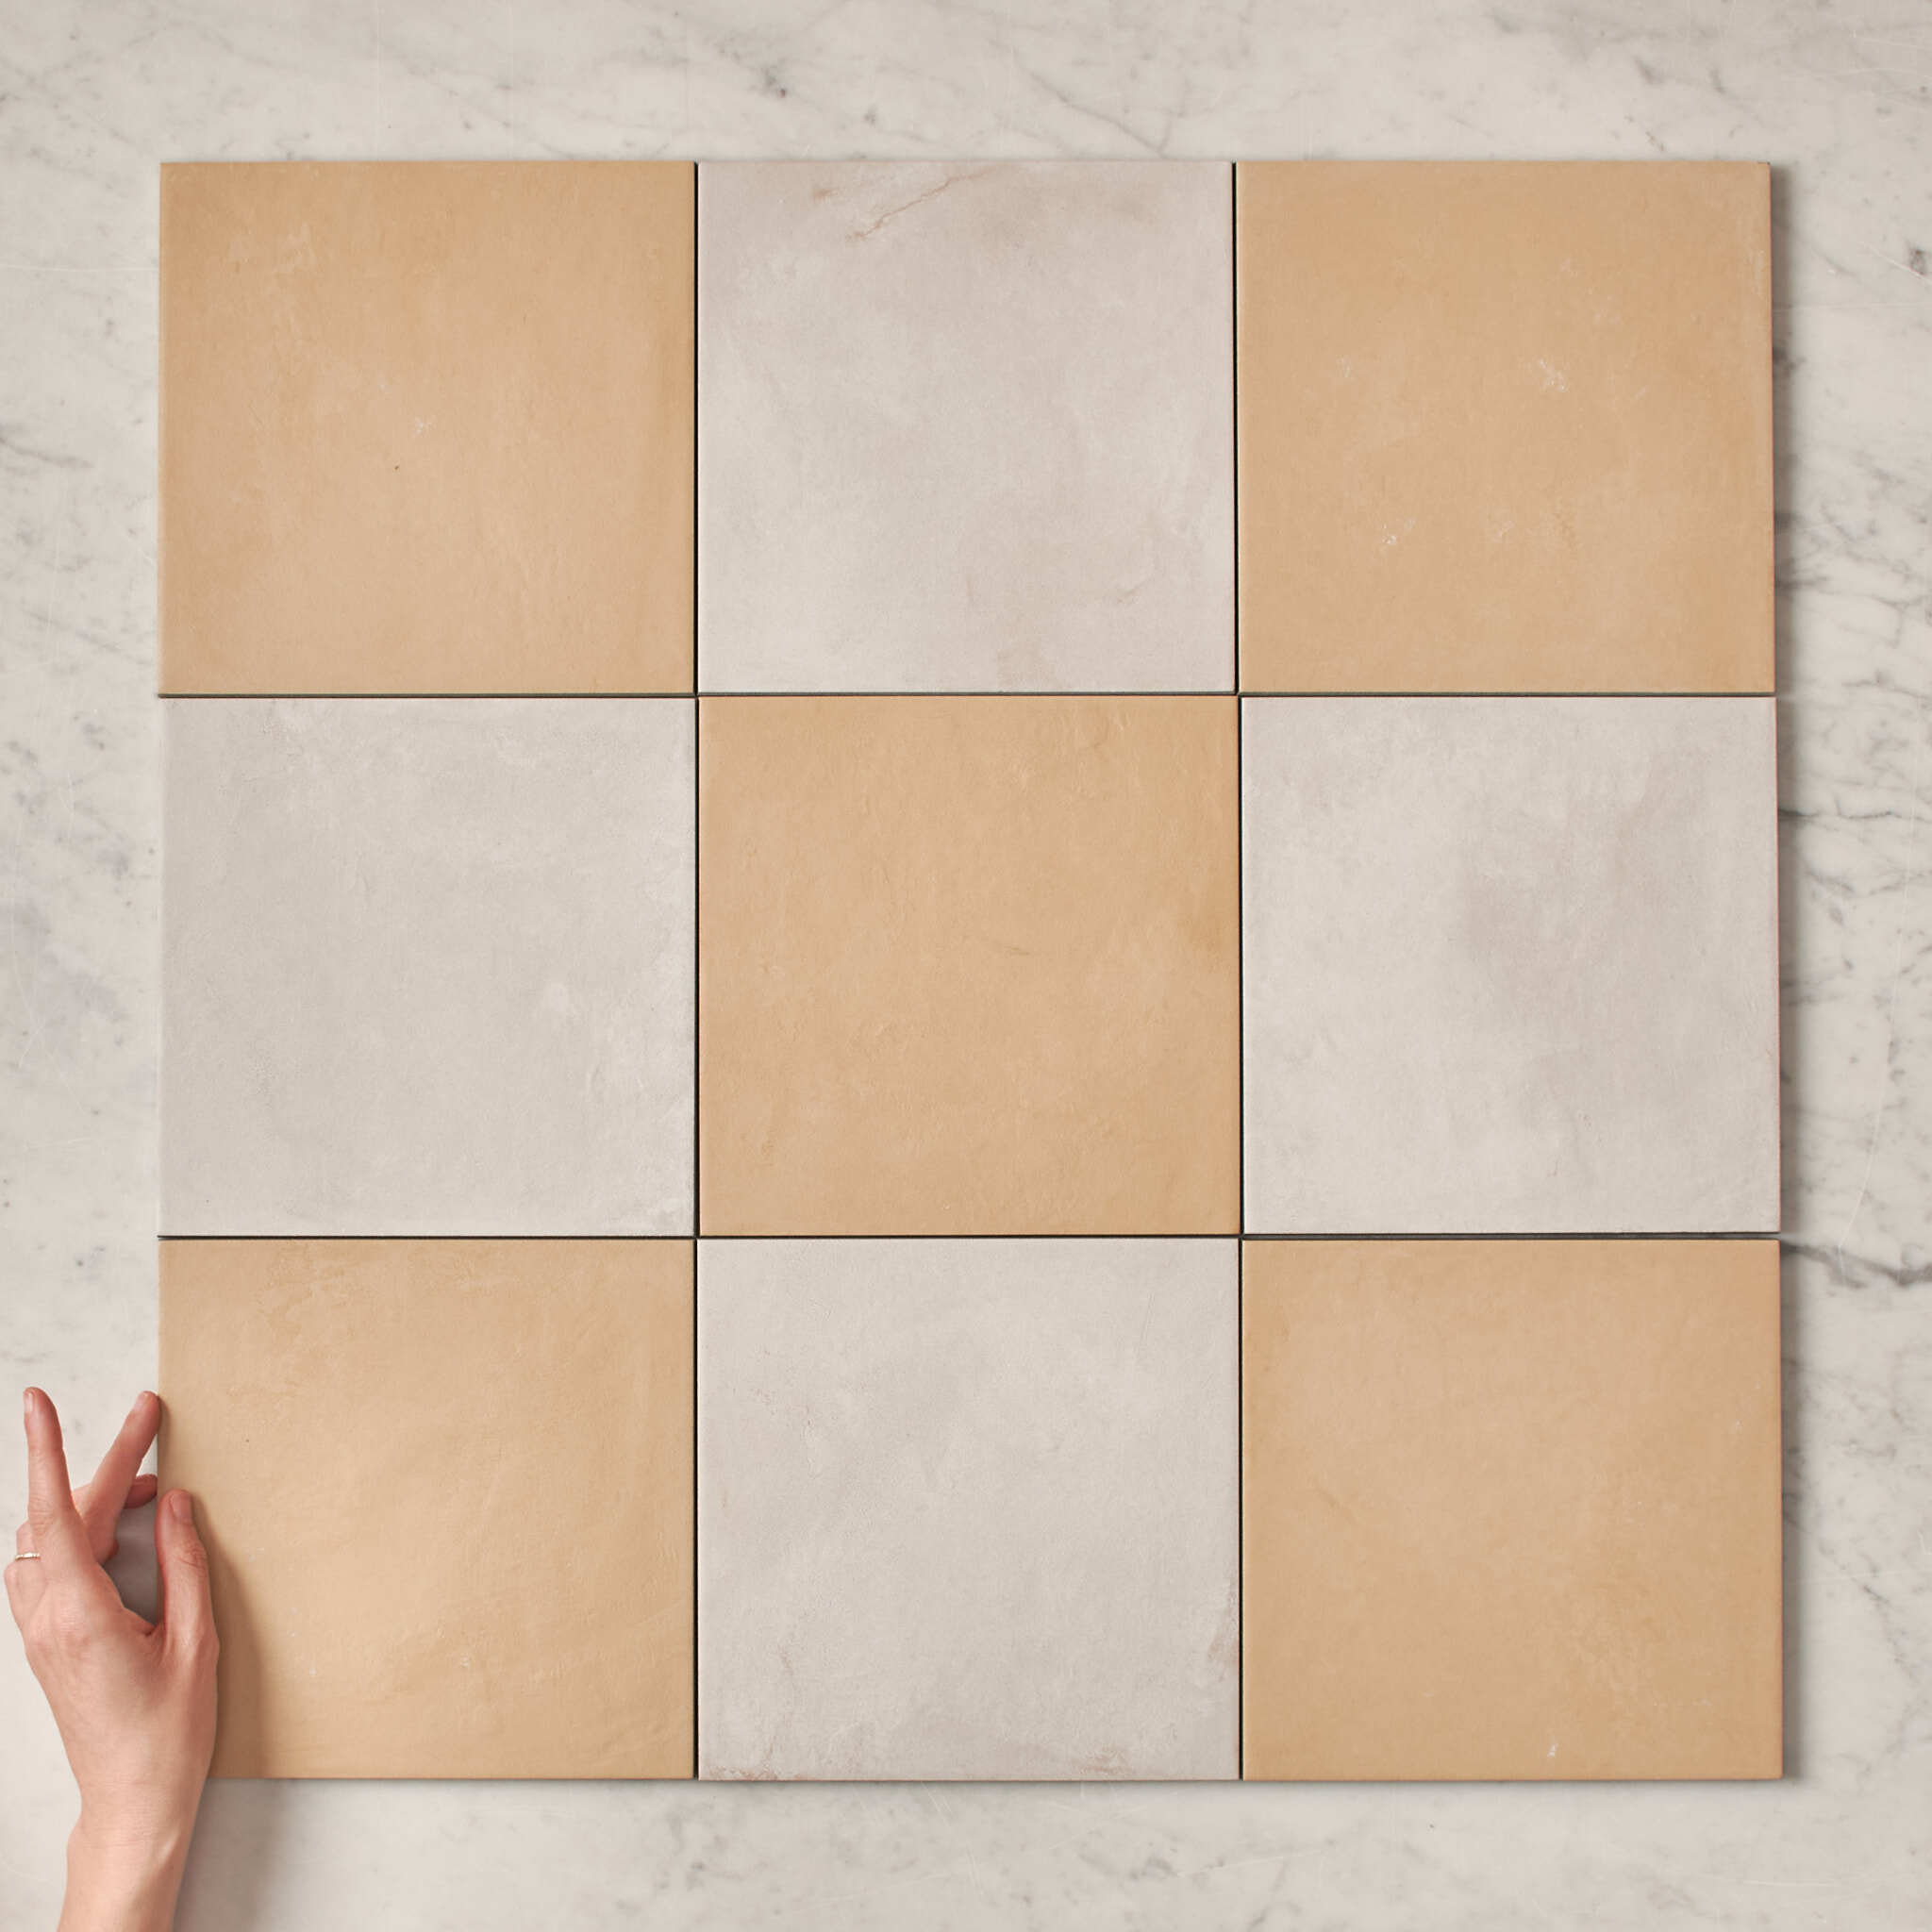 Fina Ceramics TILE Bronte Checkerboard Butter & White Tile